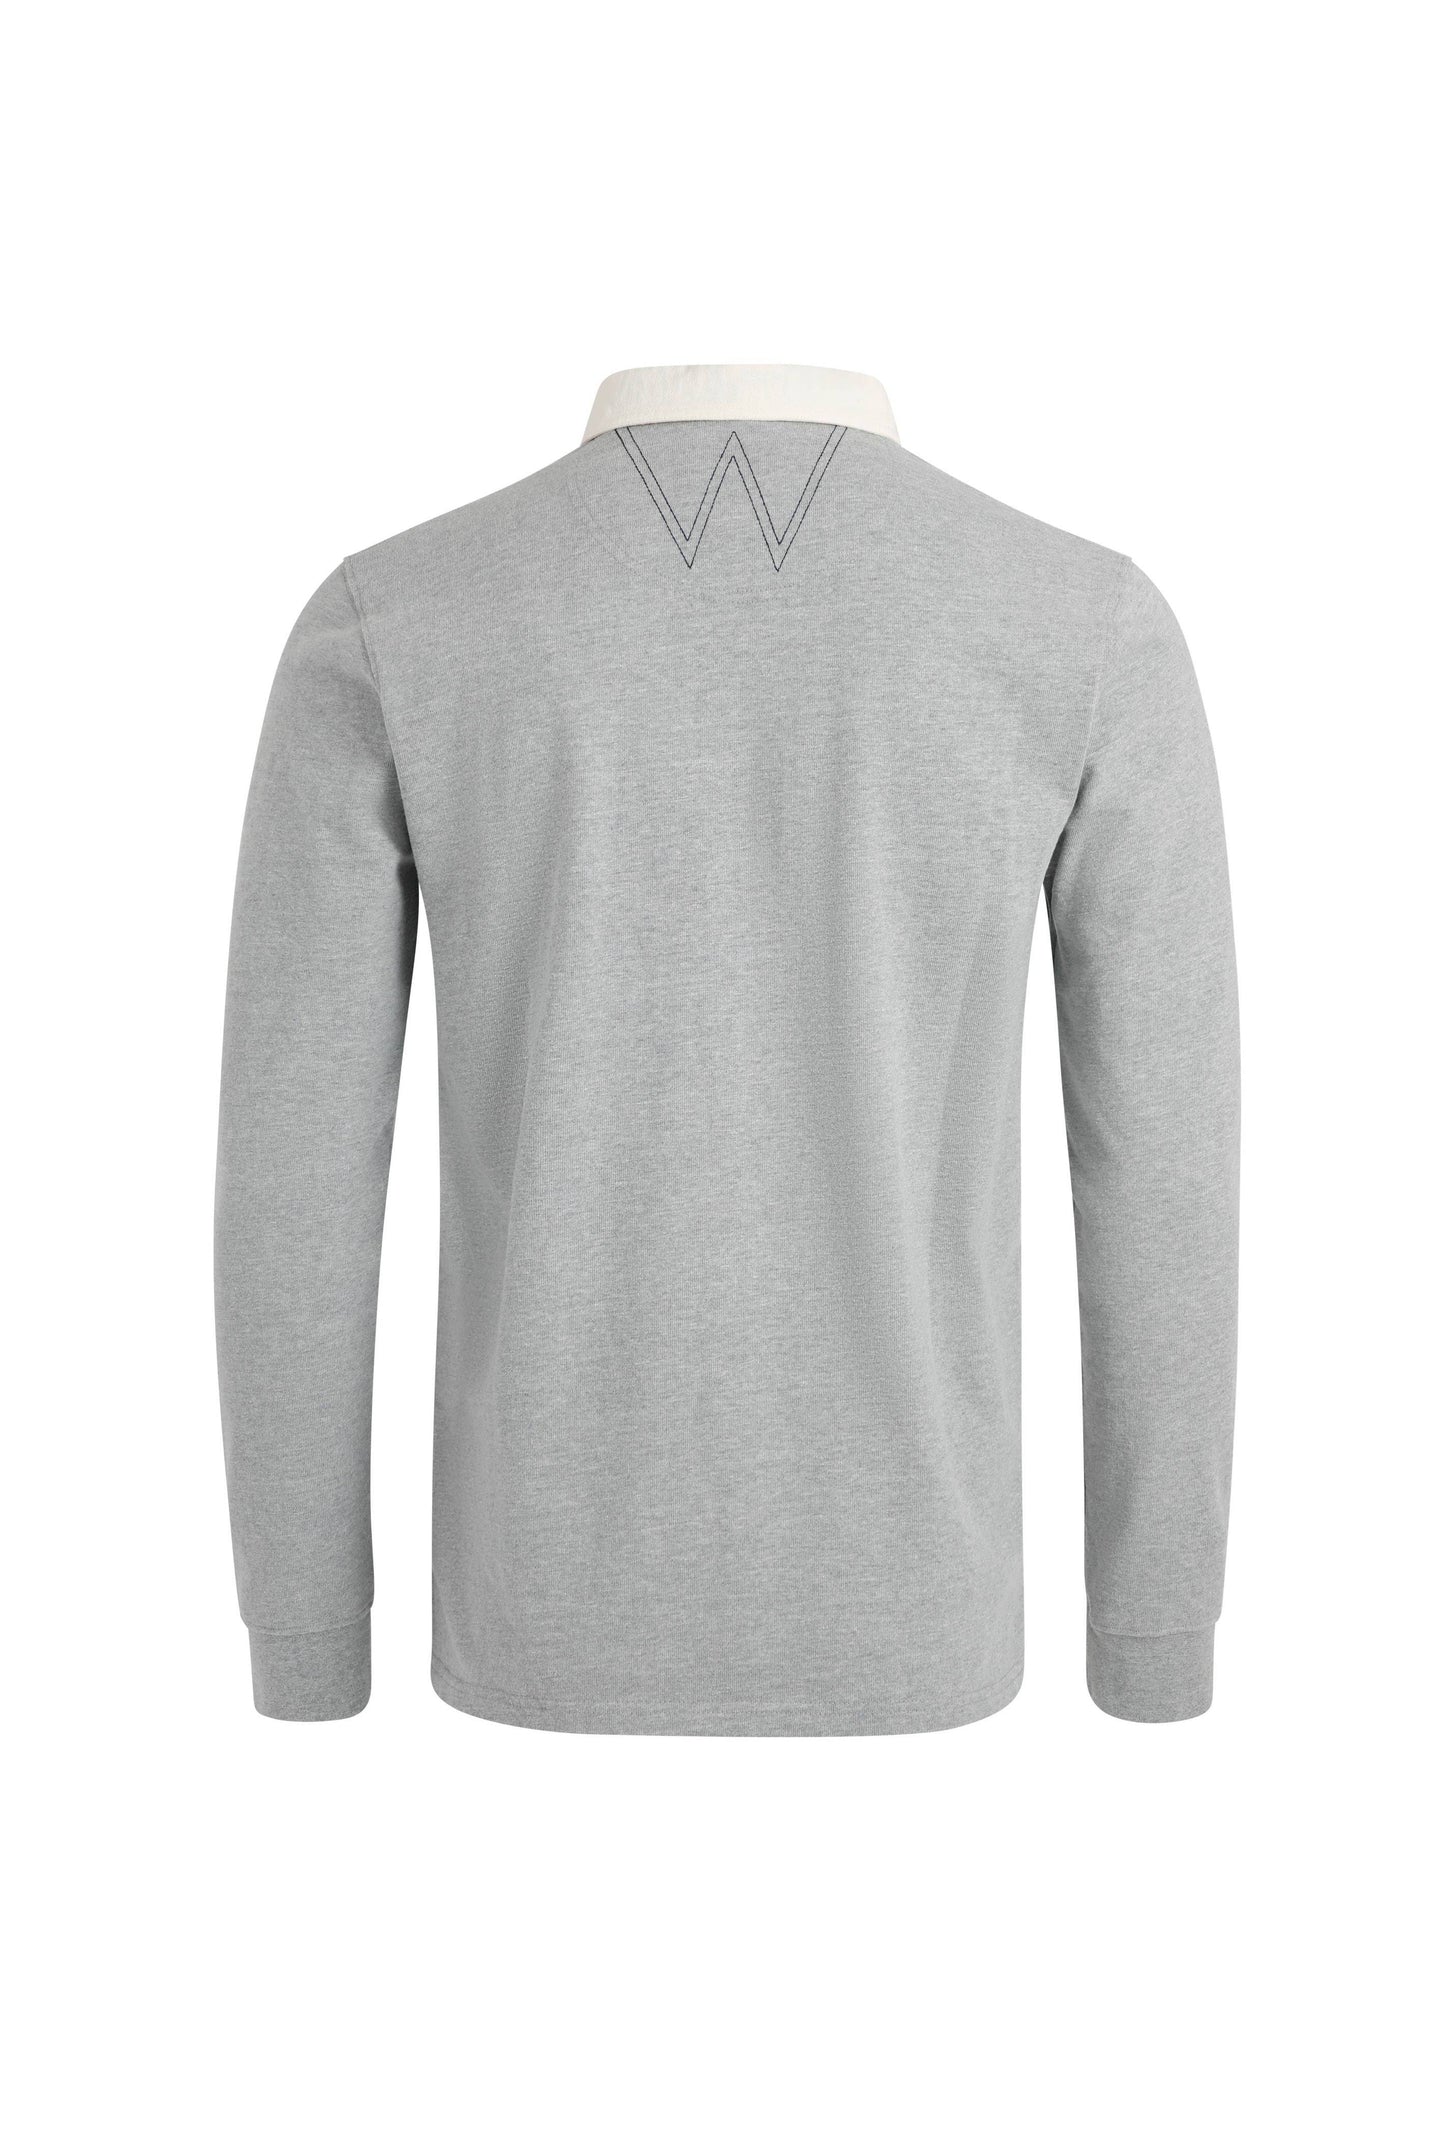 Ollerton Rugby Shirt - Grey Marl